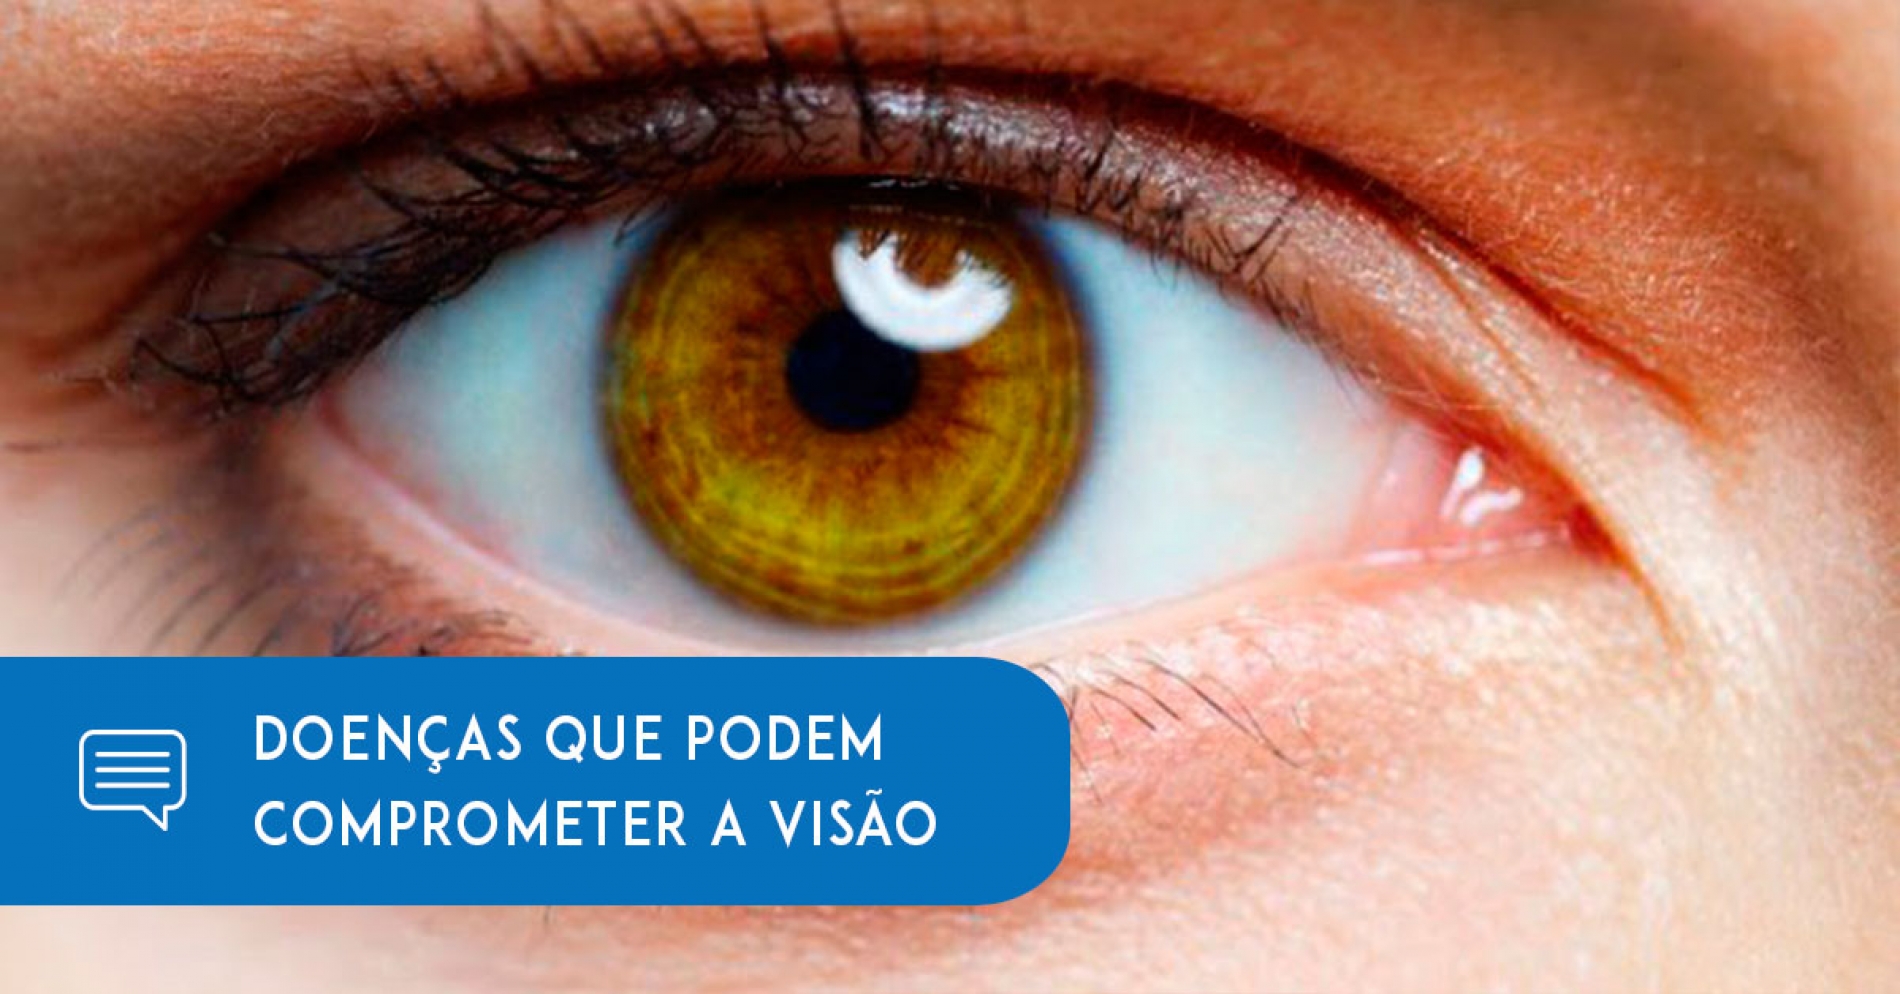 Oftalmologista aponta doenças que podem comprometer a visão - Eduardo Paulino